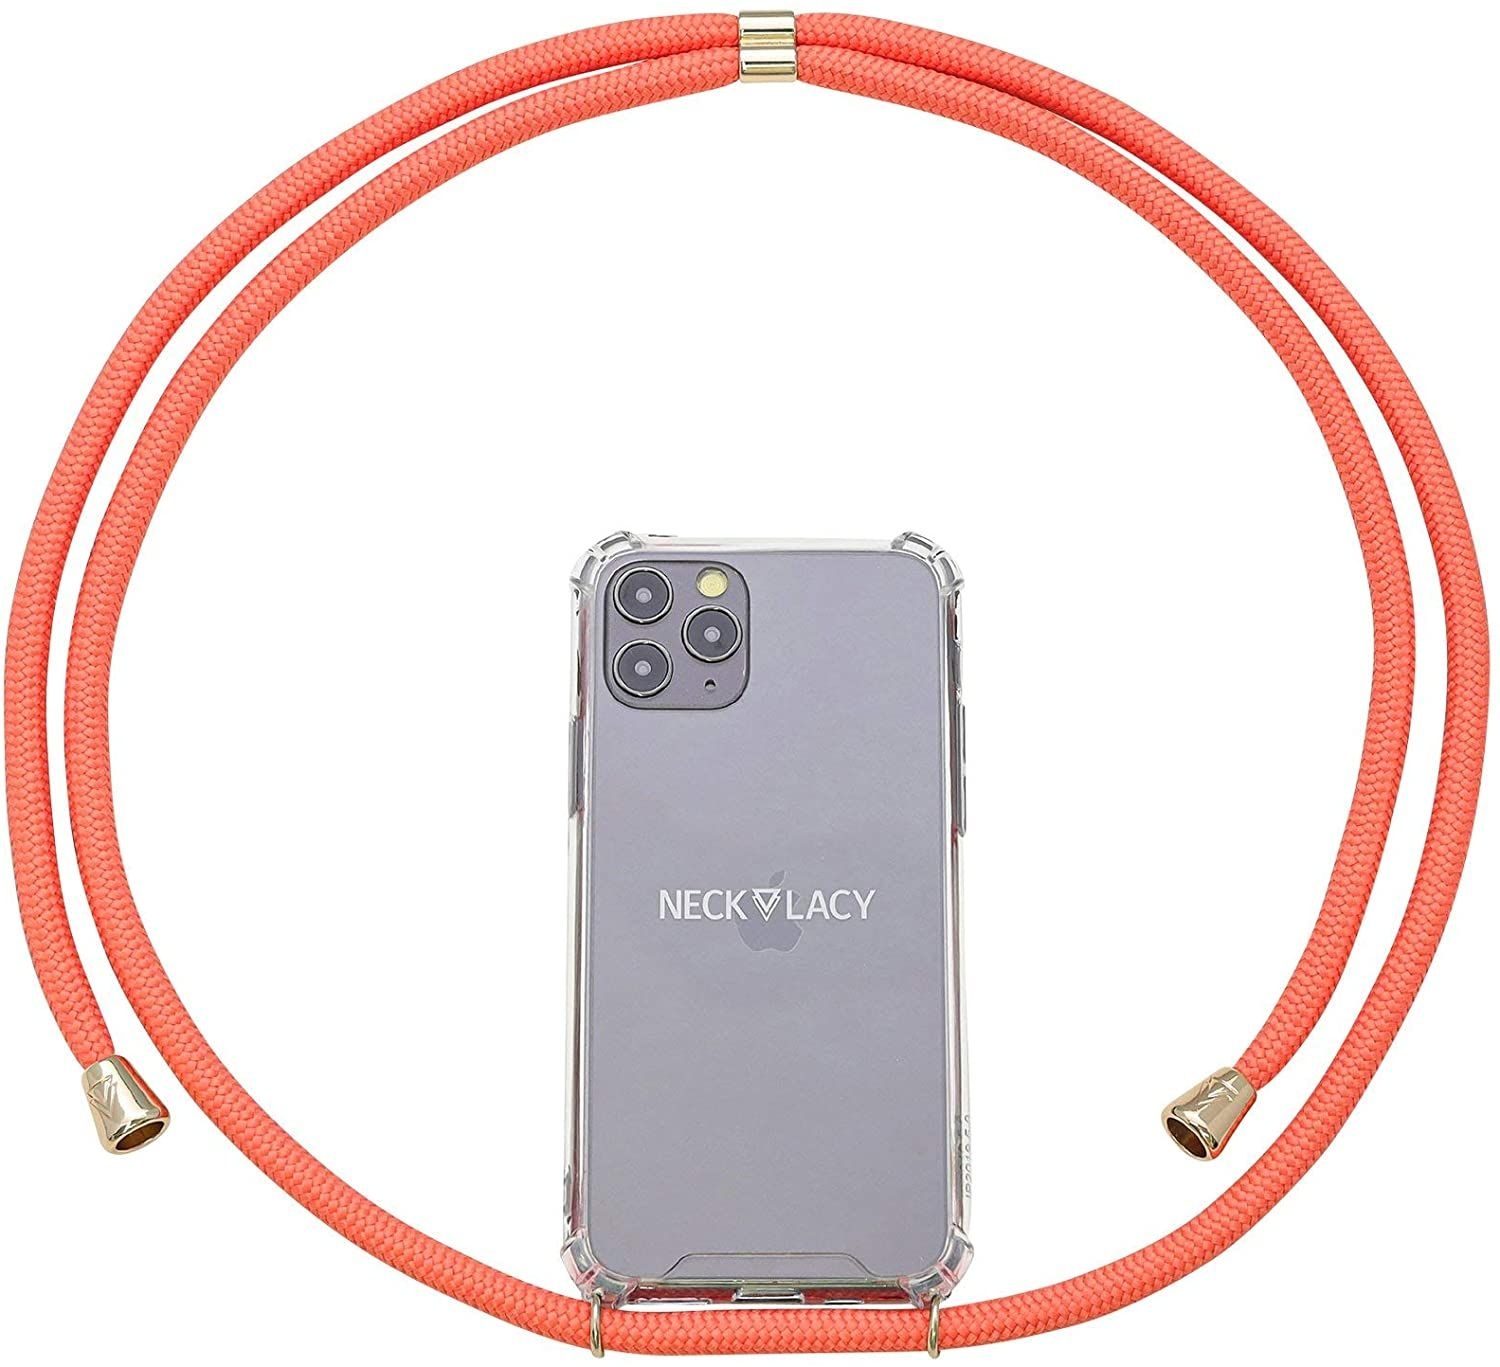 NECKLACY Handykette Handyhülle zum umhängen - für iPhone X/XS - Case / Handyhülle mit Band zum umhängen - Trageband Hals mit Kordel - Smartphone Necklace, Coral Reef